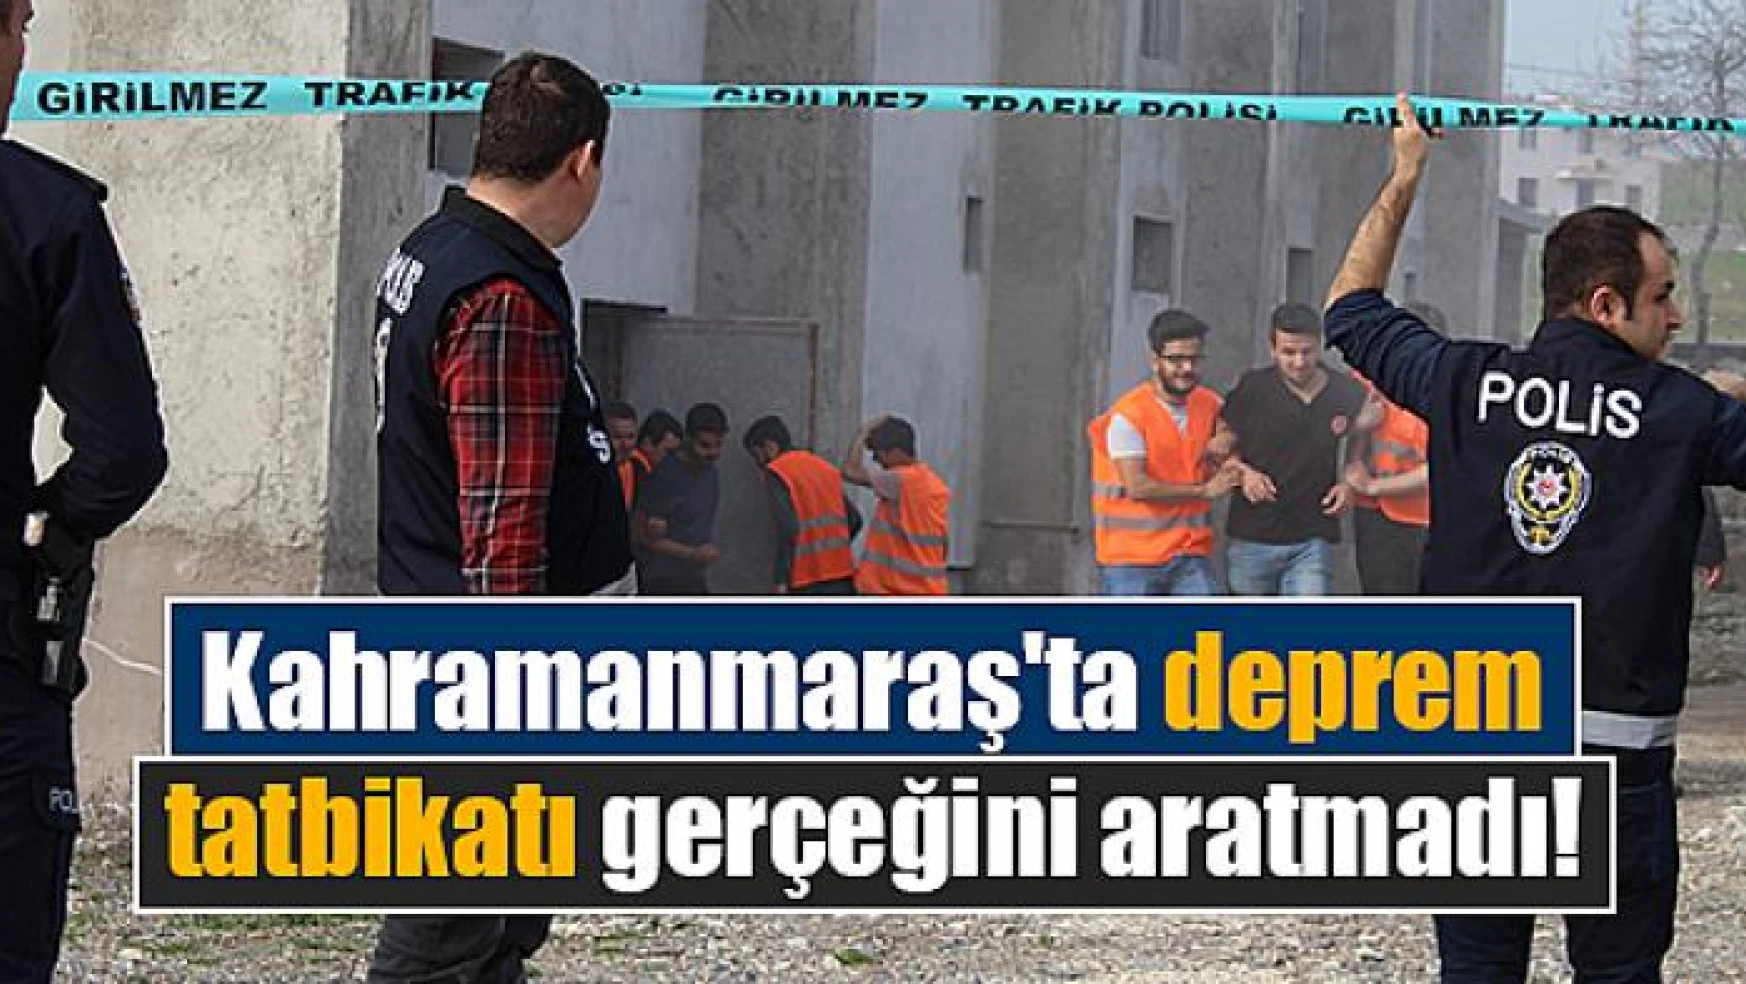 Kahramanmaraş'ta deprem tatbikatı gerçeğini aratmadı!